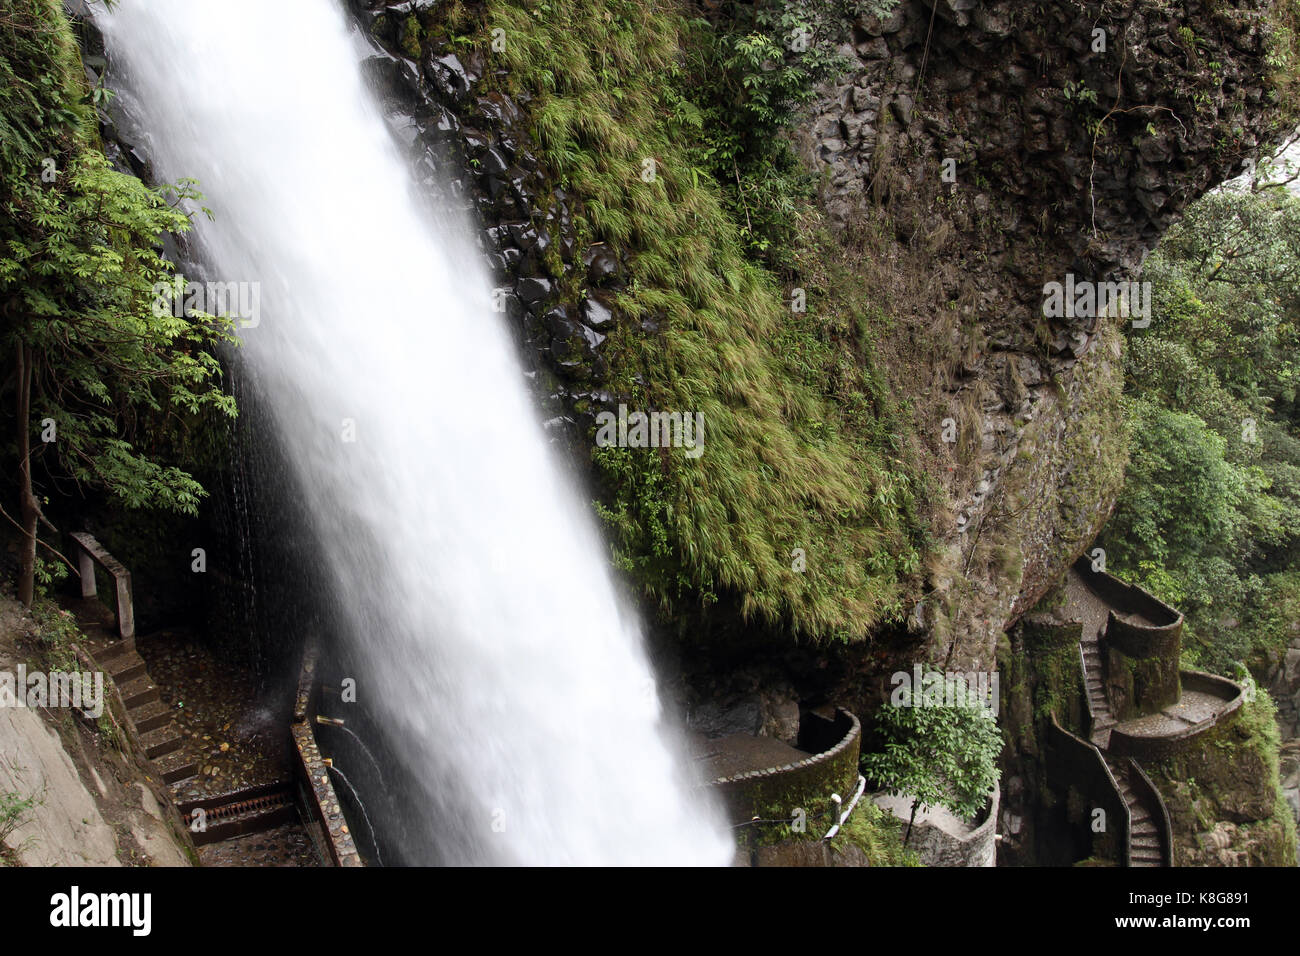 Cascada En Banos Ecuador Foto Imagen De Stock 160168317 Alamy